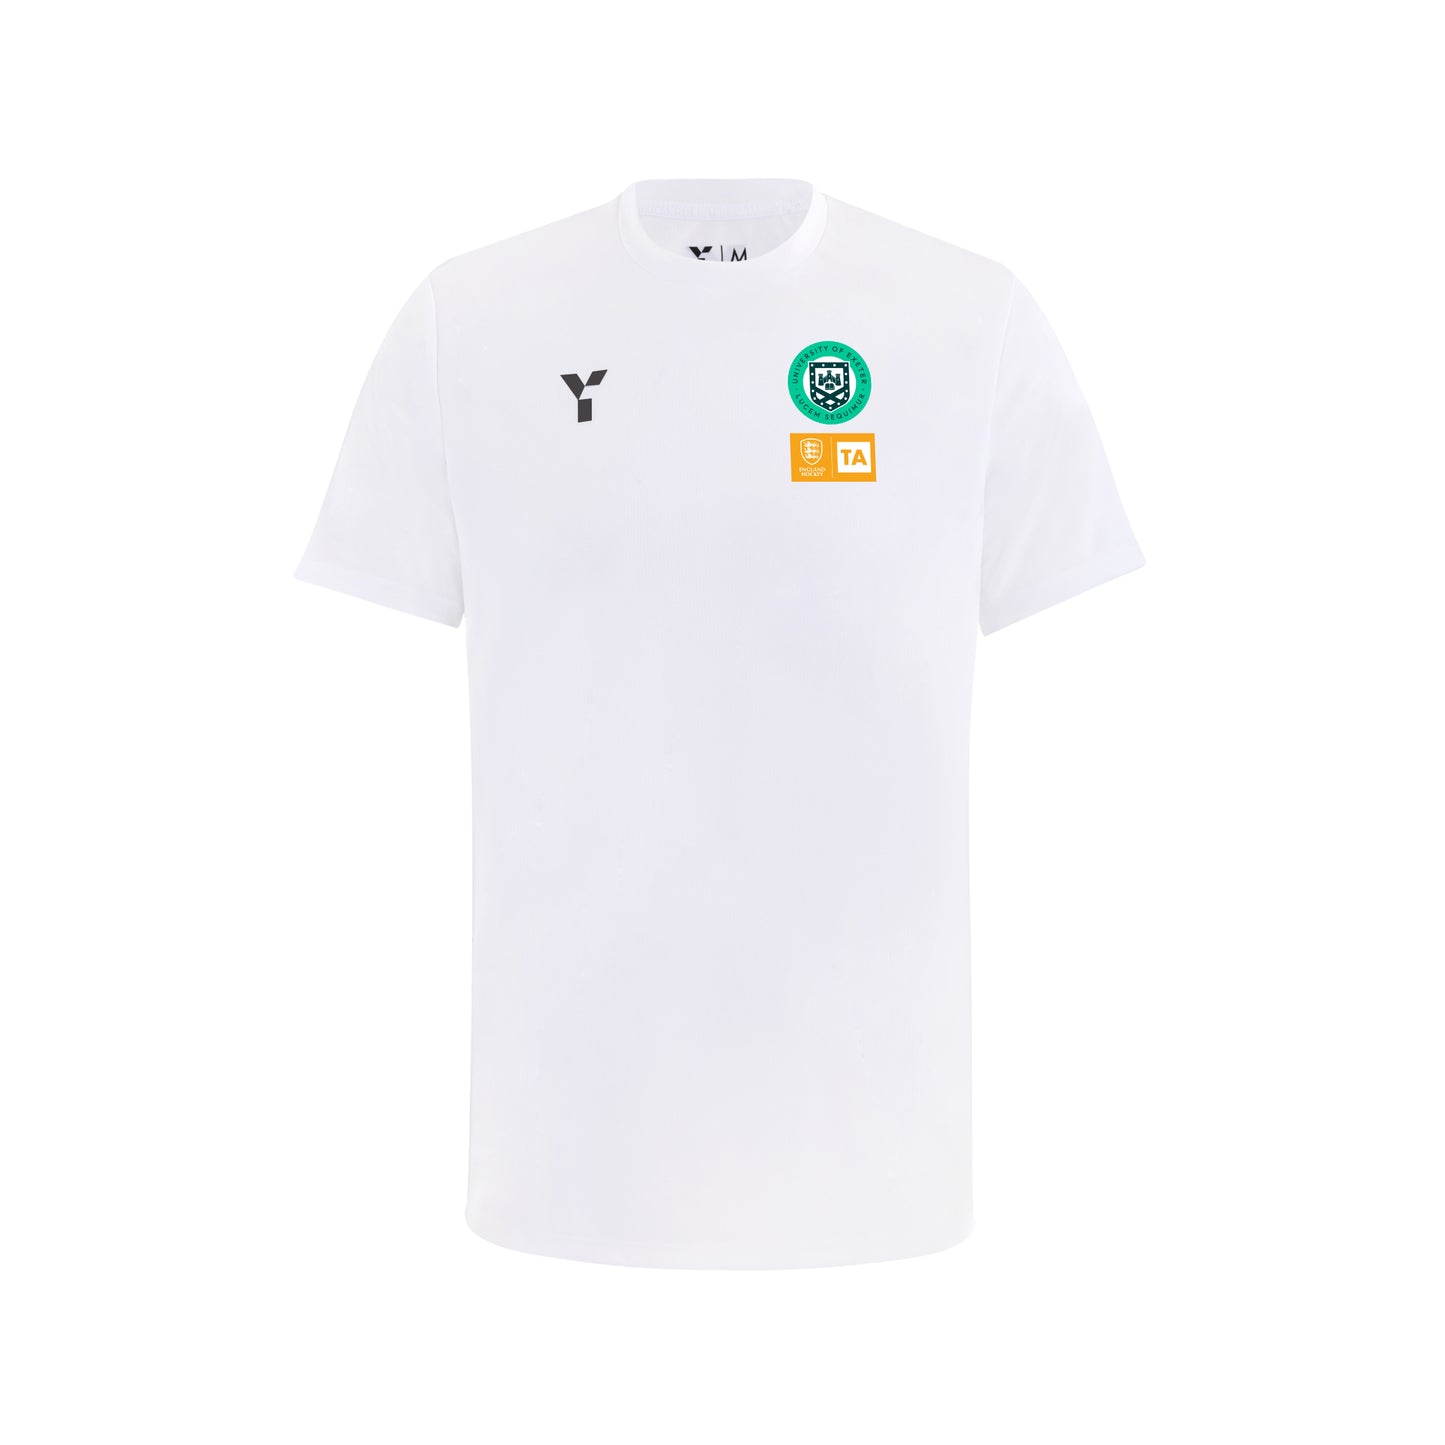 Exeter TA - Junior Short Sleeve Match Top Unisex White